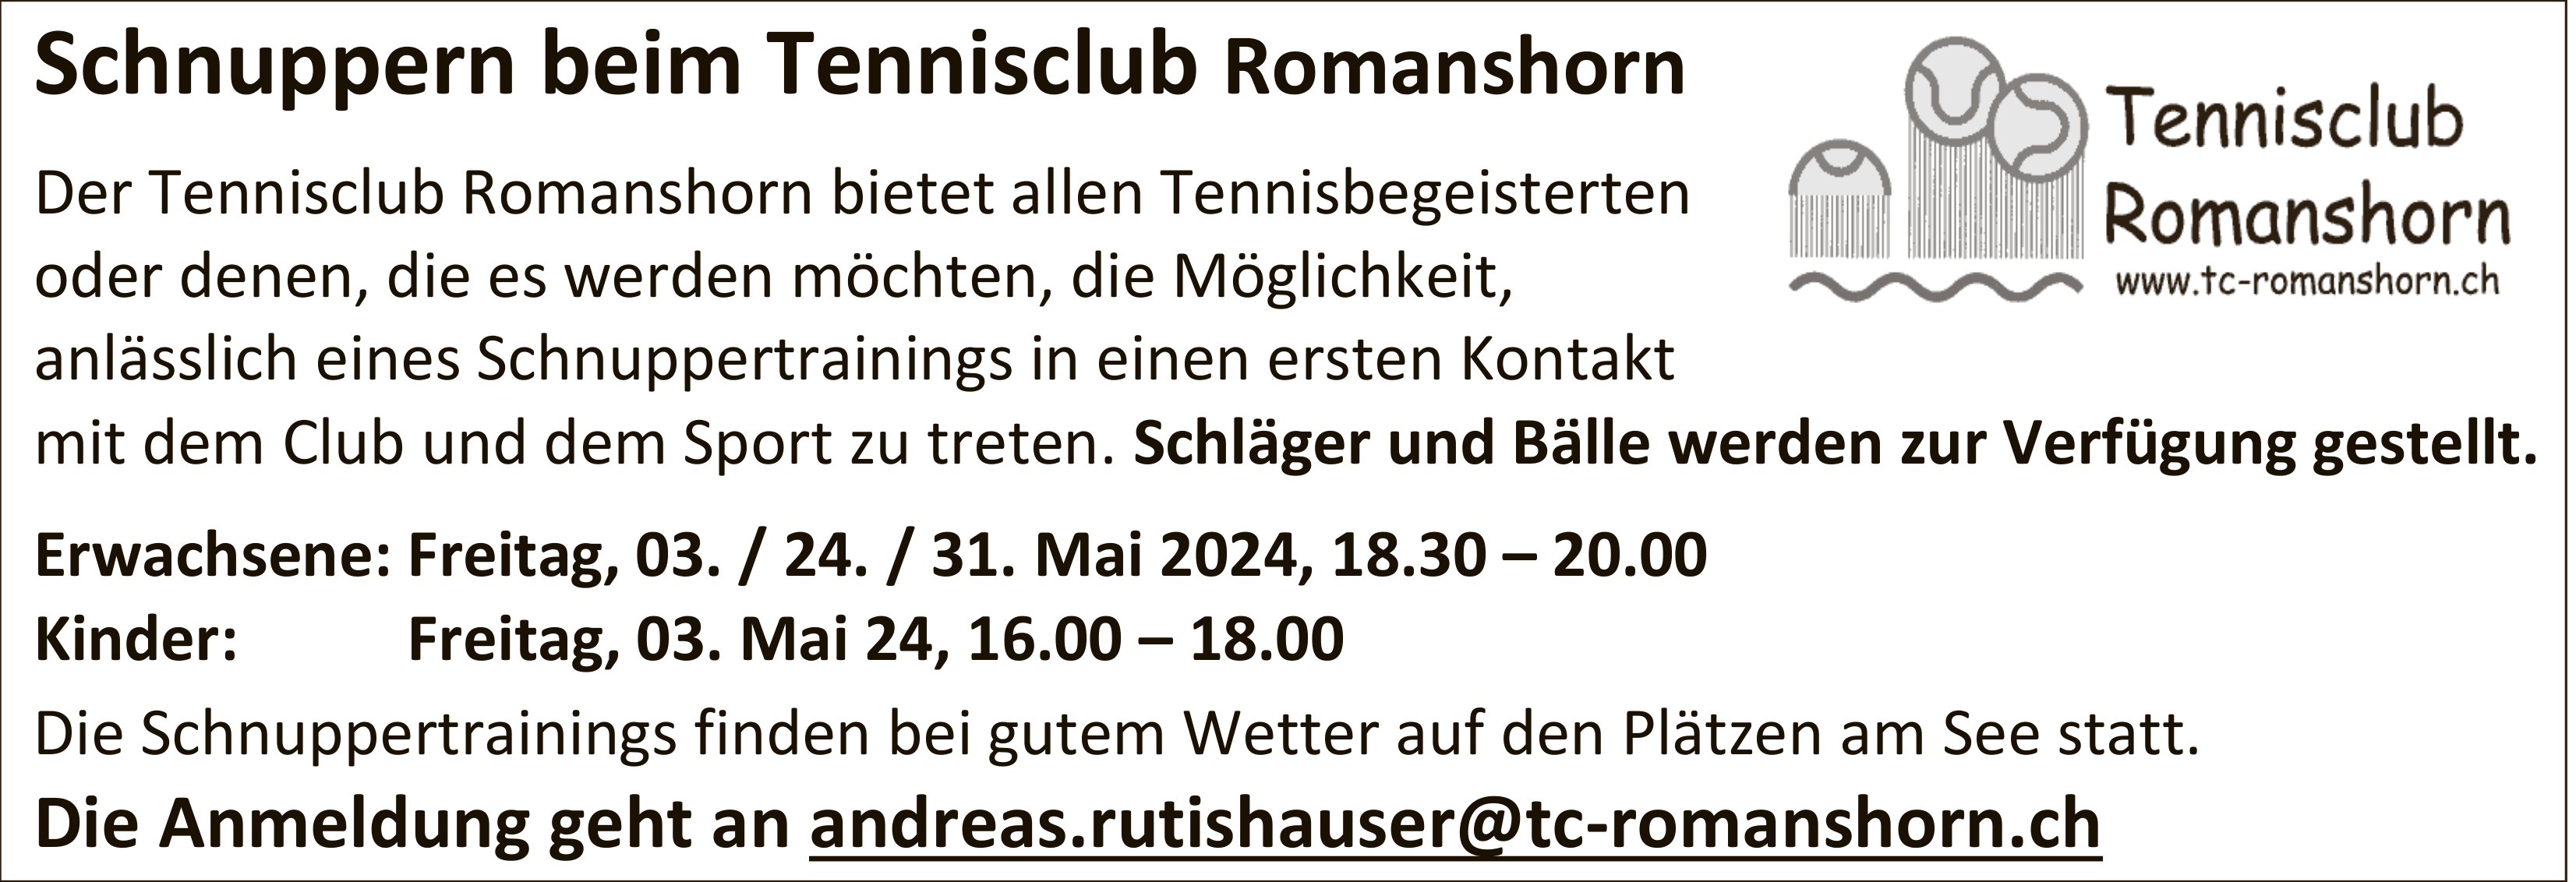 Schnuppern beim Tennisclub Romanshorn